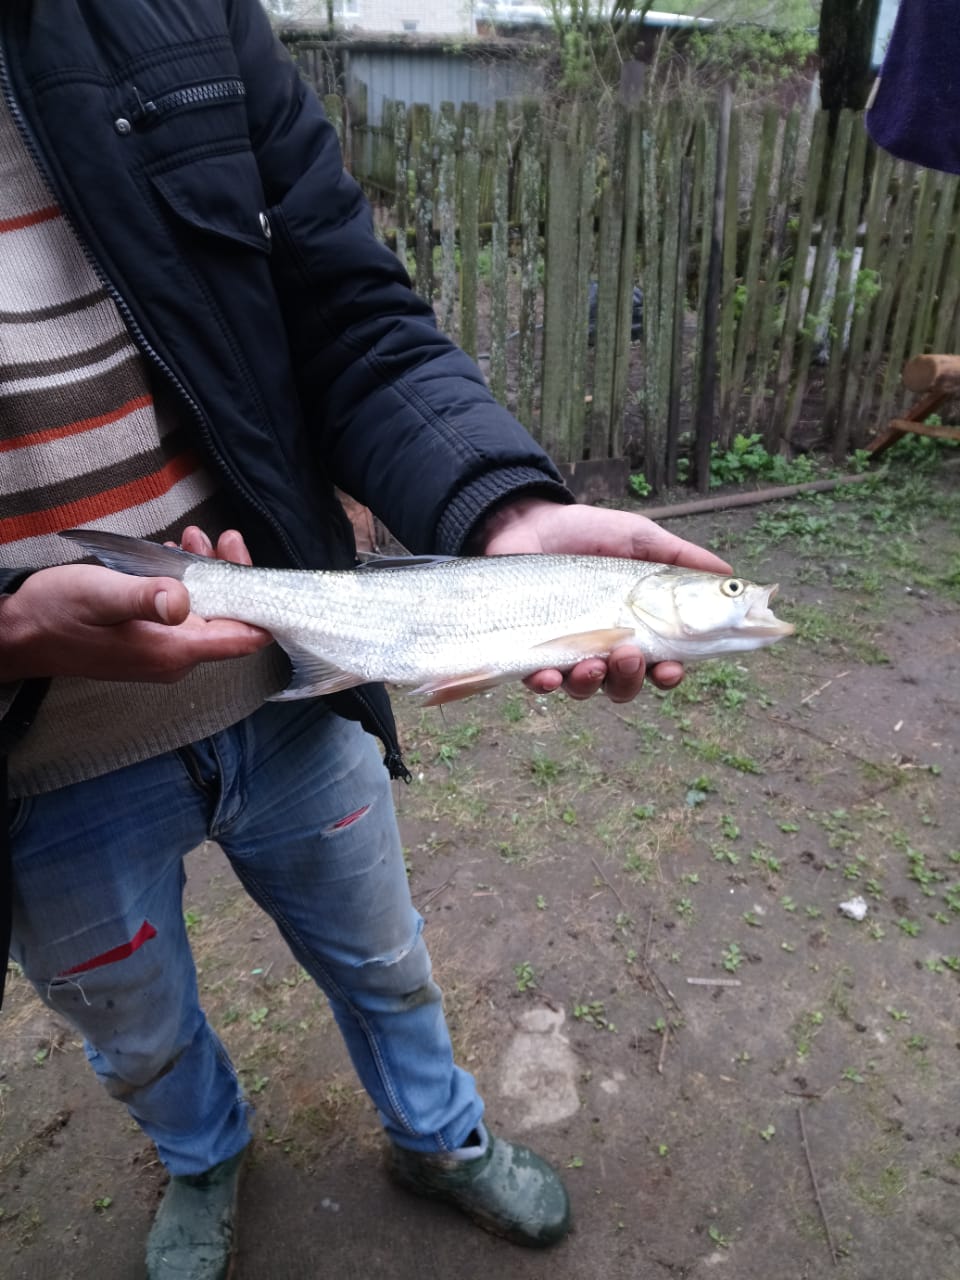 Максим из «Москва» просит распознать рыбу по фото